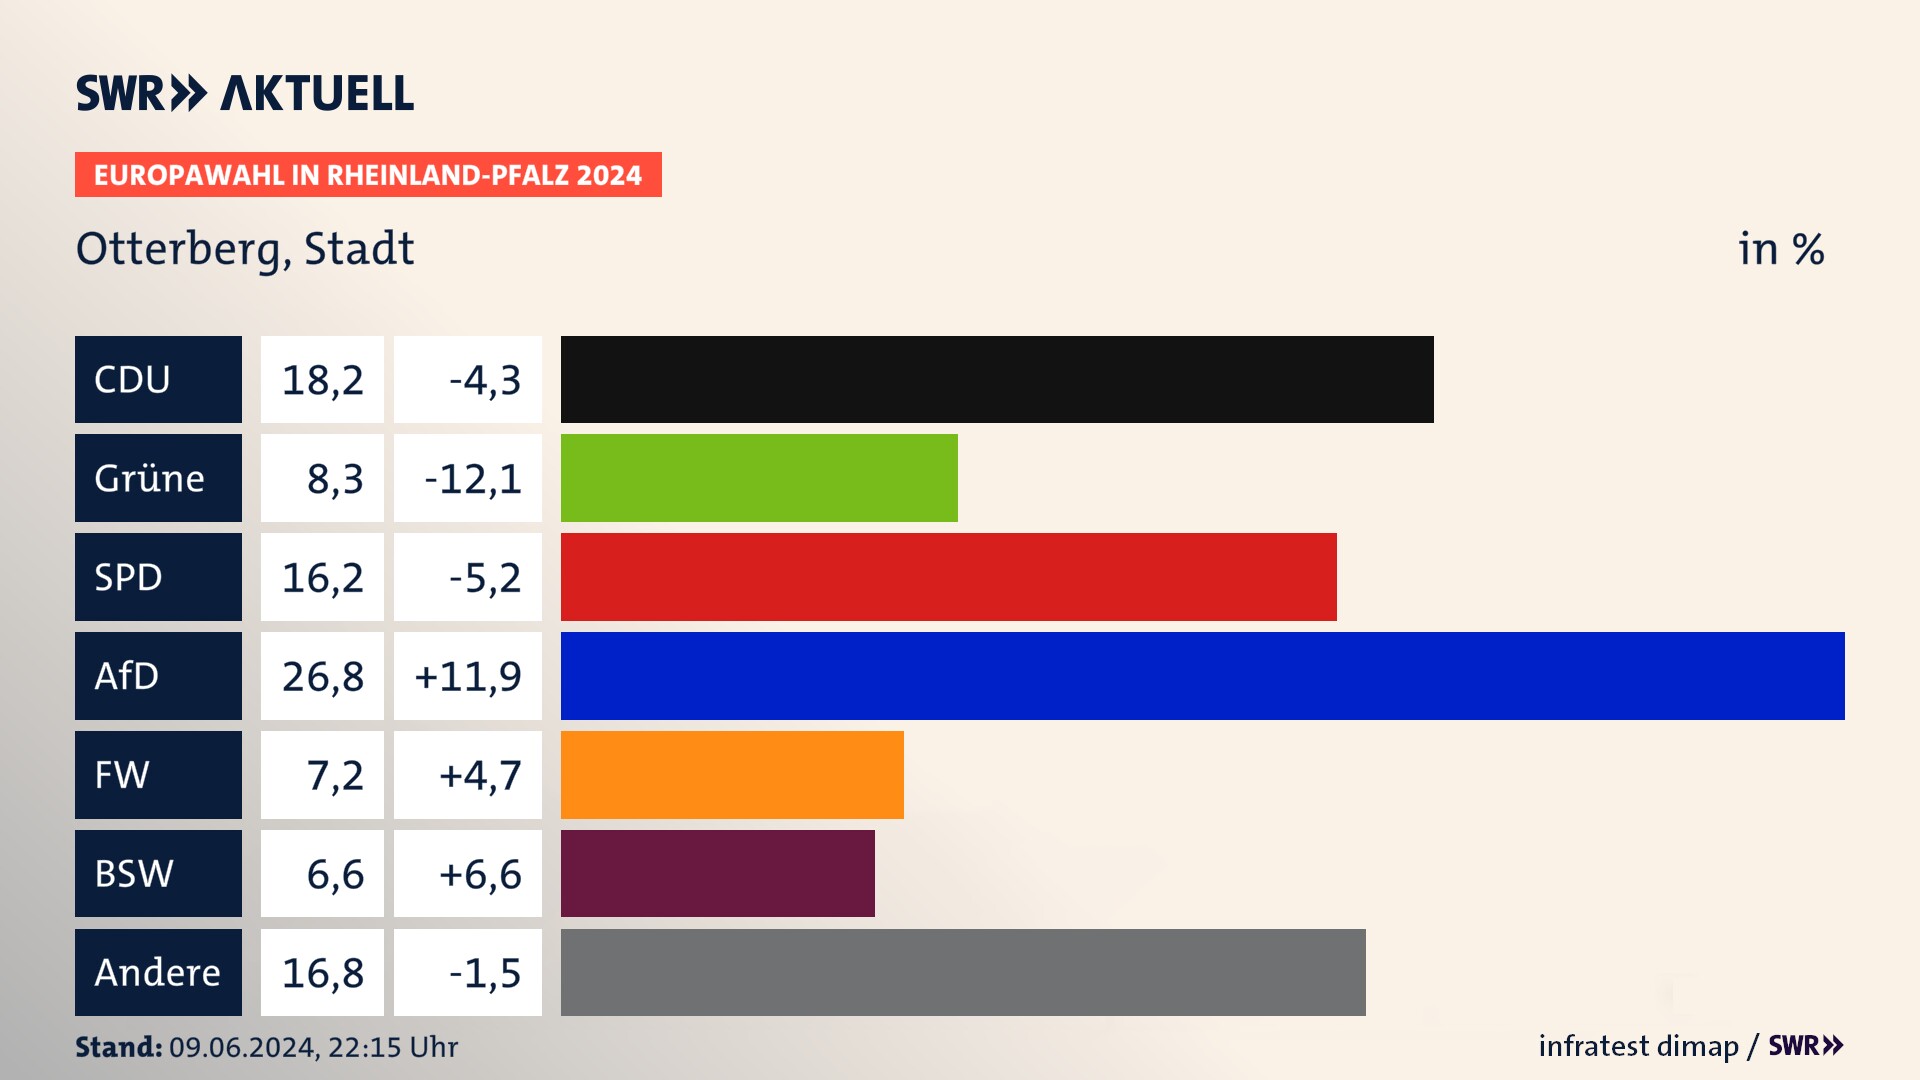 Europawahl 2024 Endergebnis Zweitstimme für Otterberg, Stadt. In Otterberg, Stadt erzielt die CDU 18,2 Prozent der gültigen  Stimmen. Die Grünen landen bei 8,3 Prozent. Die SPD erreicht 16,2 Prozent. Die AfD kommt auf 26,8 Prozent. Die Freien Wähler landen bei 7,2 Prozent. Die 2019 nicht angetretene Partei BSW bekommt 6,6 Prozent.